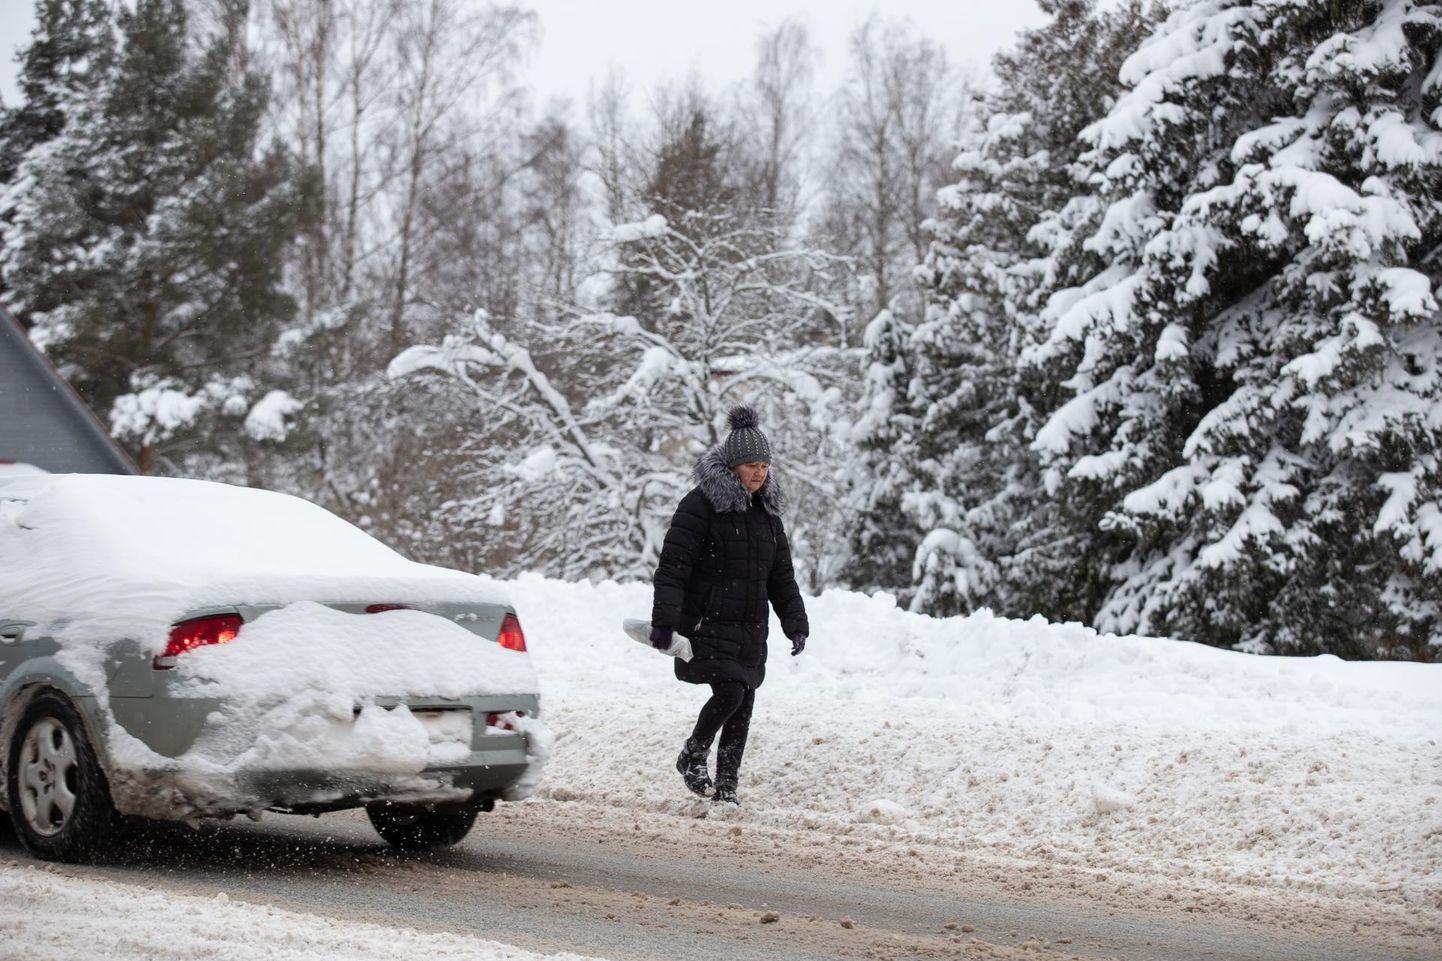 Kõnniteed on lund täis, nii peavadki jalakäijad trotsima ohte autode vahel sõiduteel.